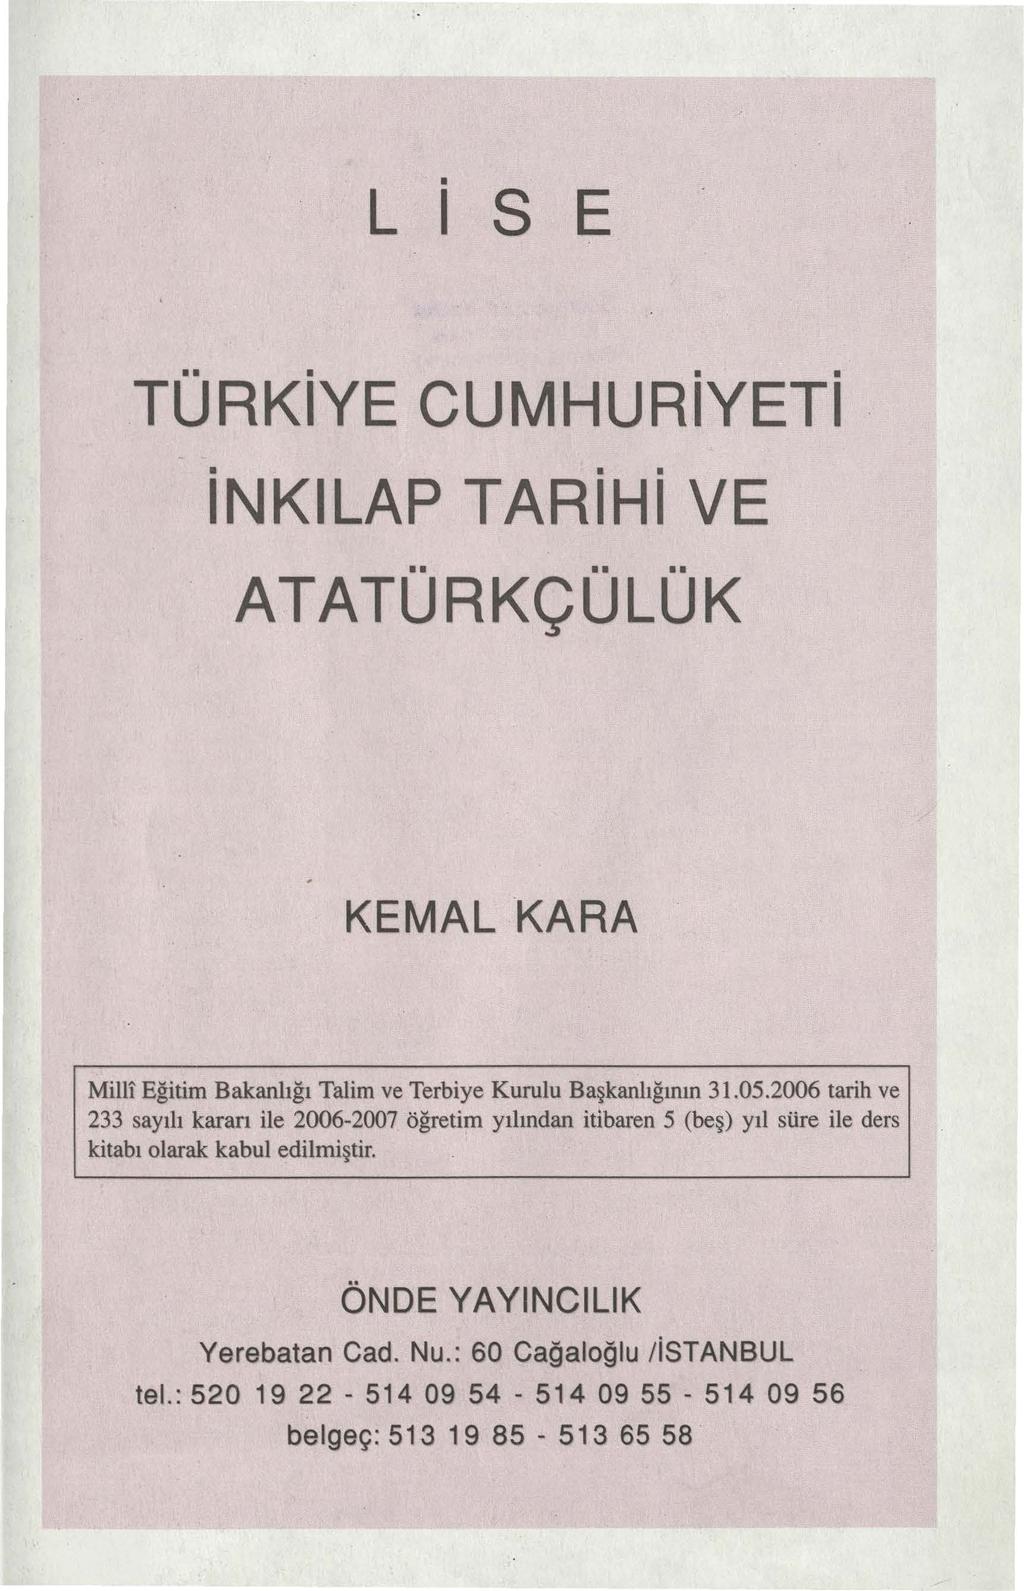 L 1 S E..... TURKIYE CUMHURiYETi INKILAP TARiHi VE...... ATATURKÇULUK KEMAL KARA Milli Eğitim Bakanlığı Talim ve Terbiye Kurulu Başkanlığının 31.05.